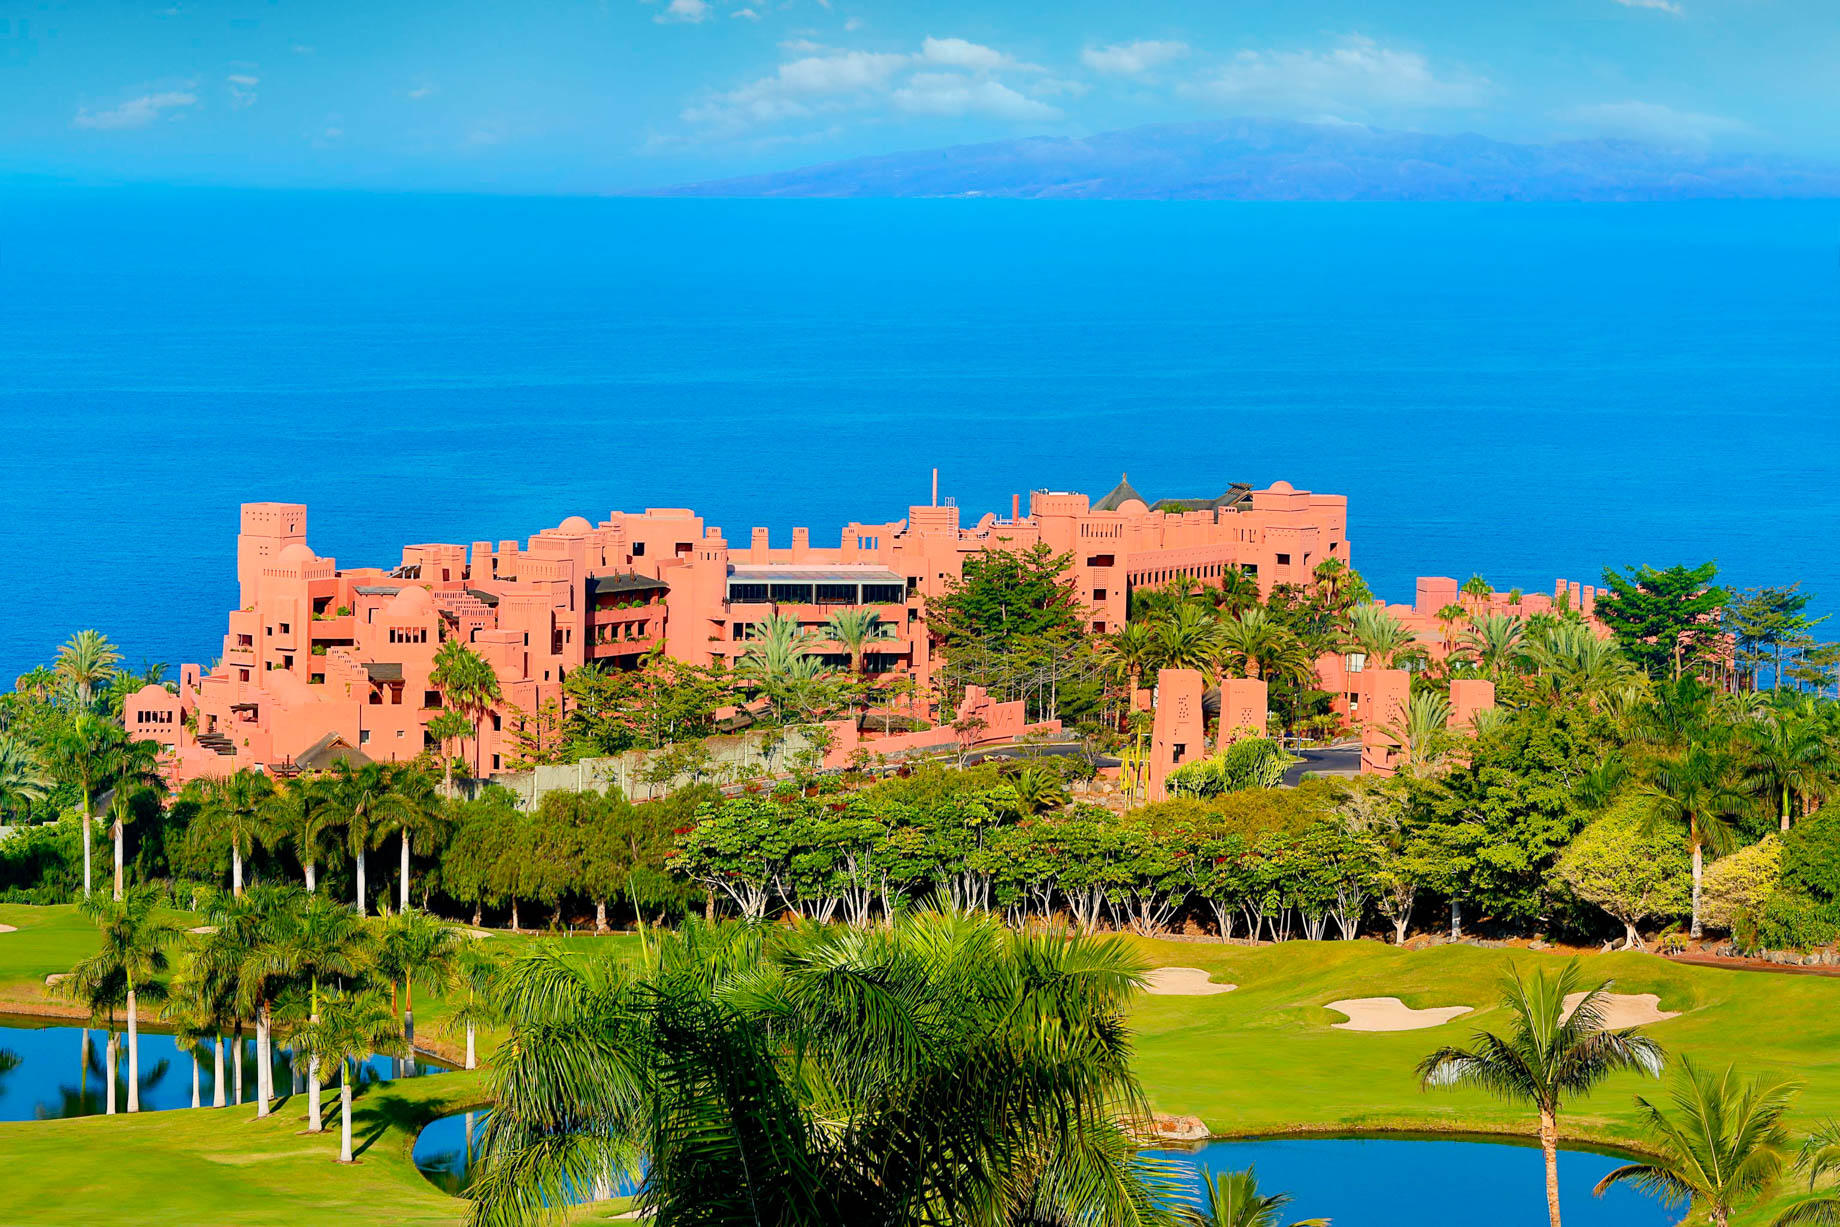 The Ritz-Carlton, Abama Resort - Santa Cruz de Tenerife, Spain - Exterior Ocean View